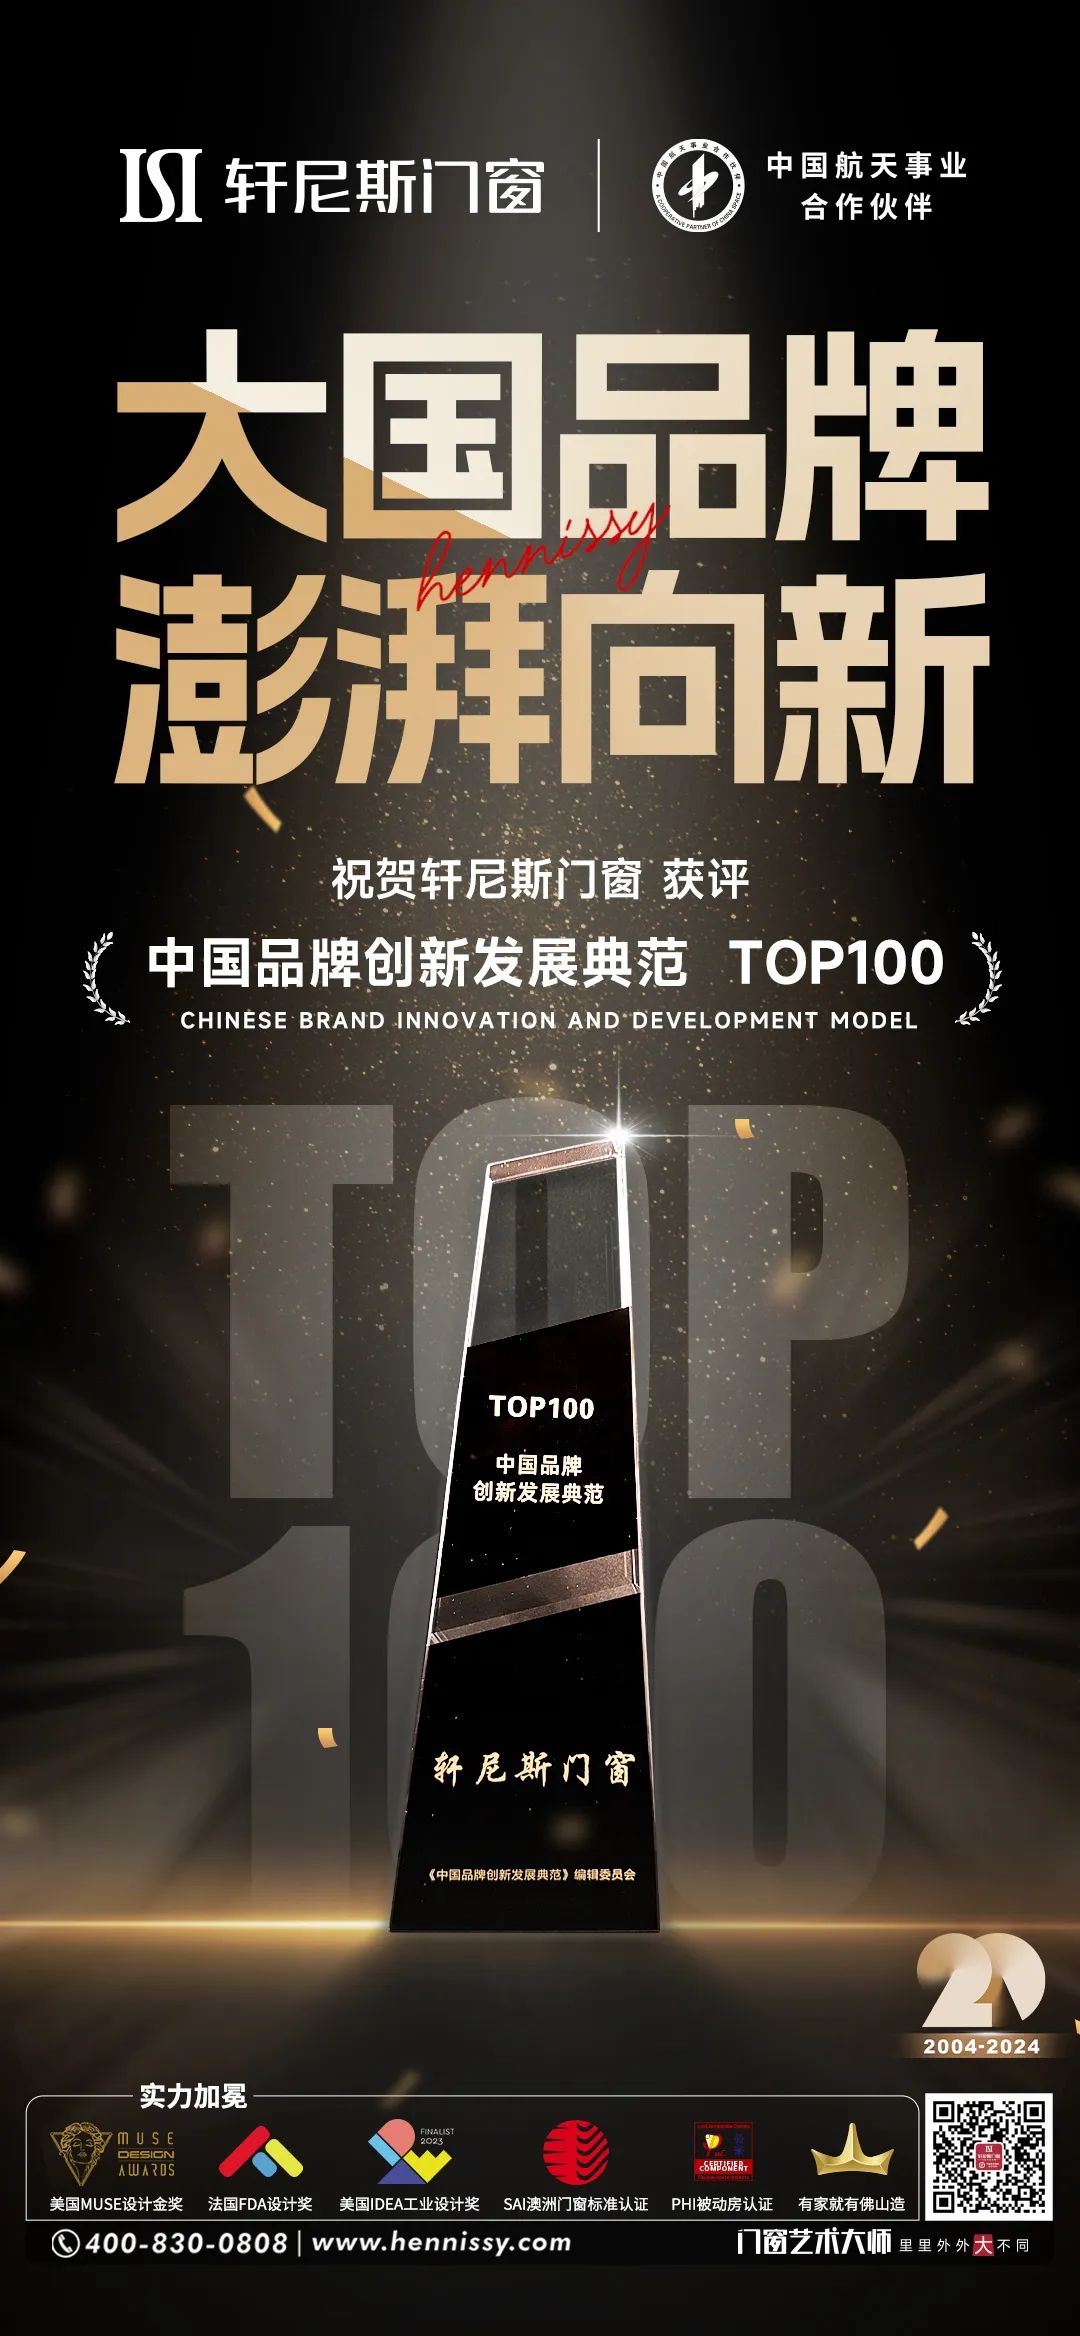 轩尼斯门窗获评“中国品牌创新发展典范TOP100”